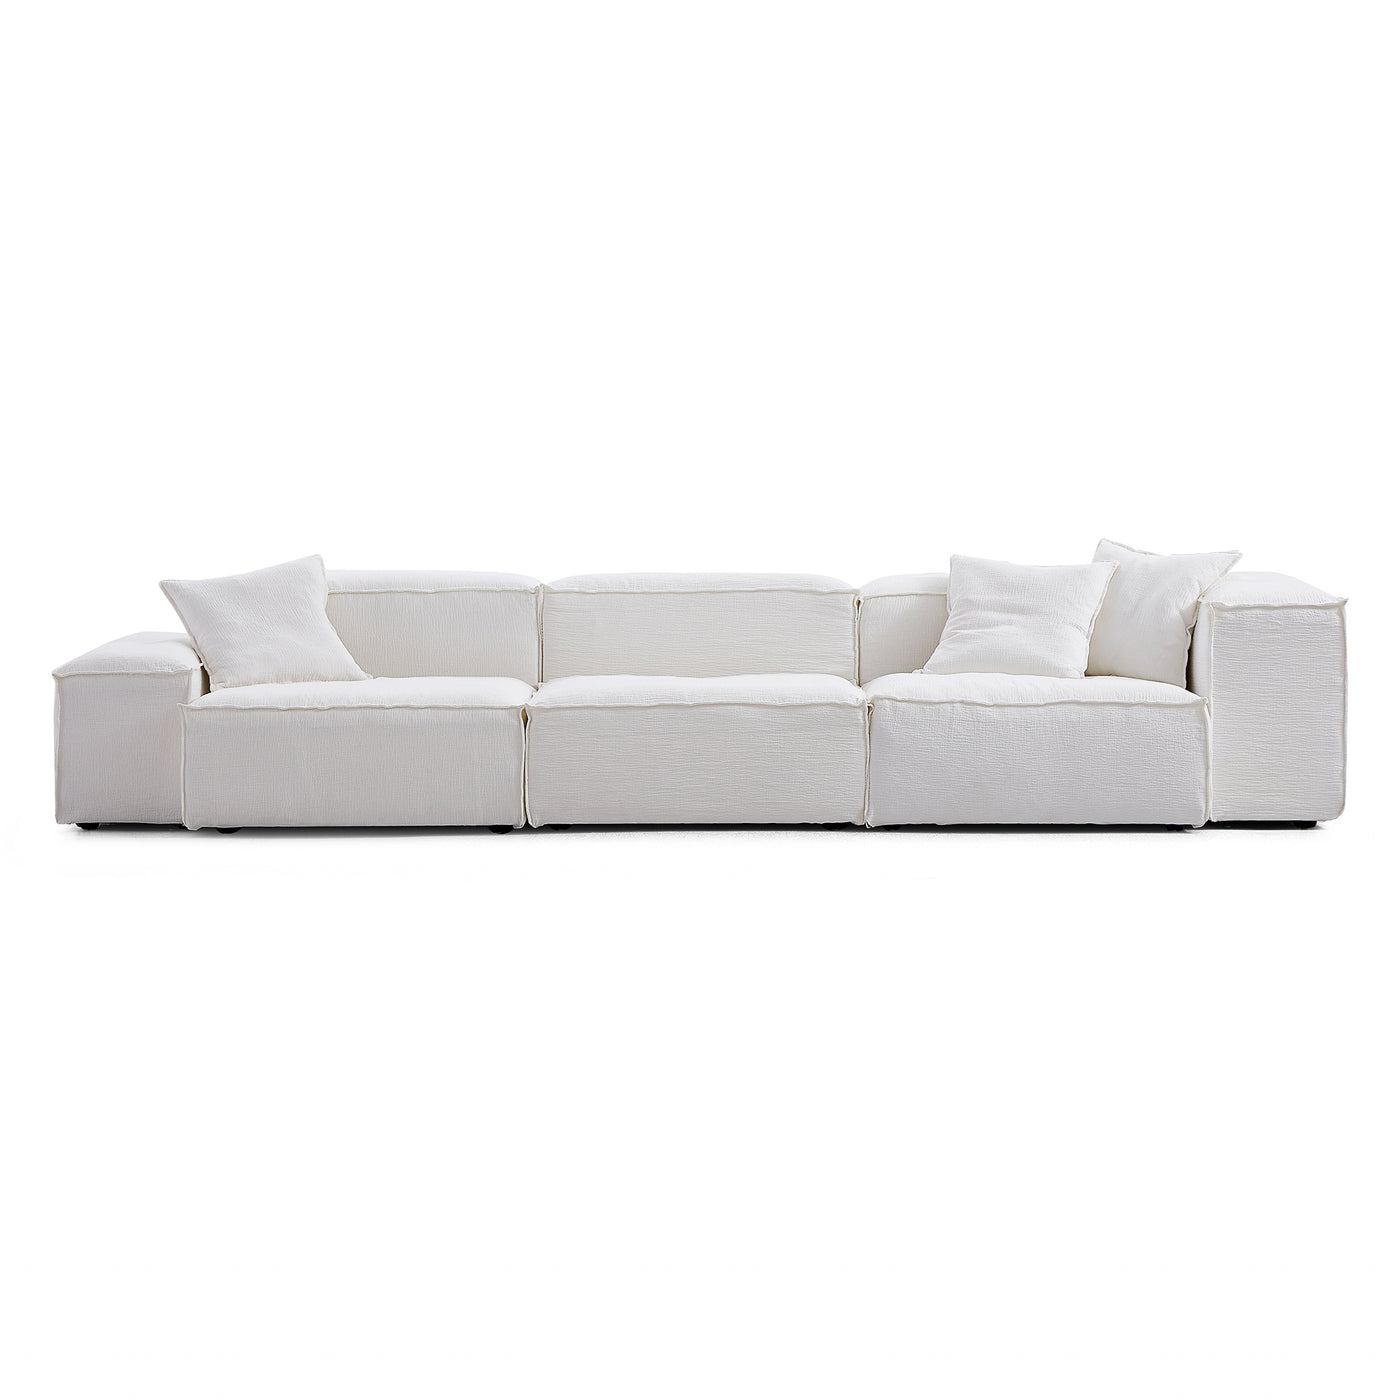 Freedom Modular Khaki Sofa-White-Low&High-143.7″